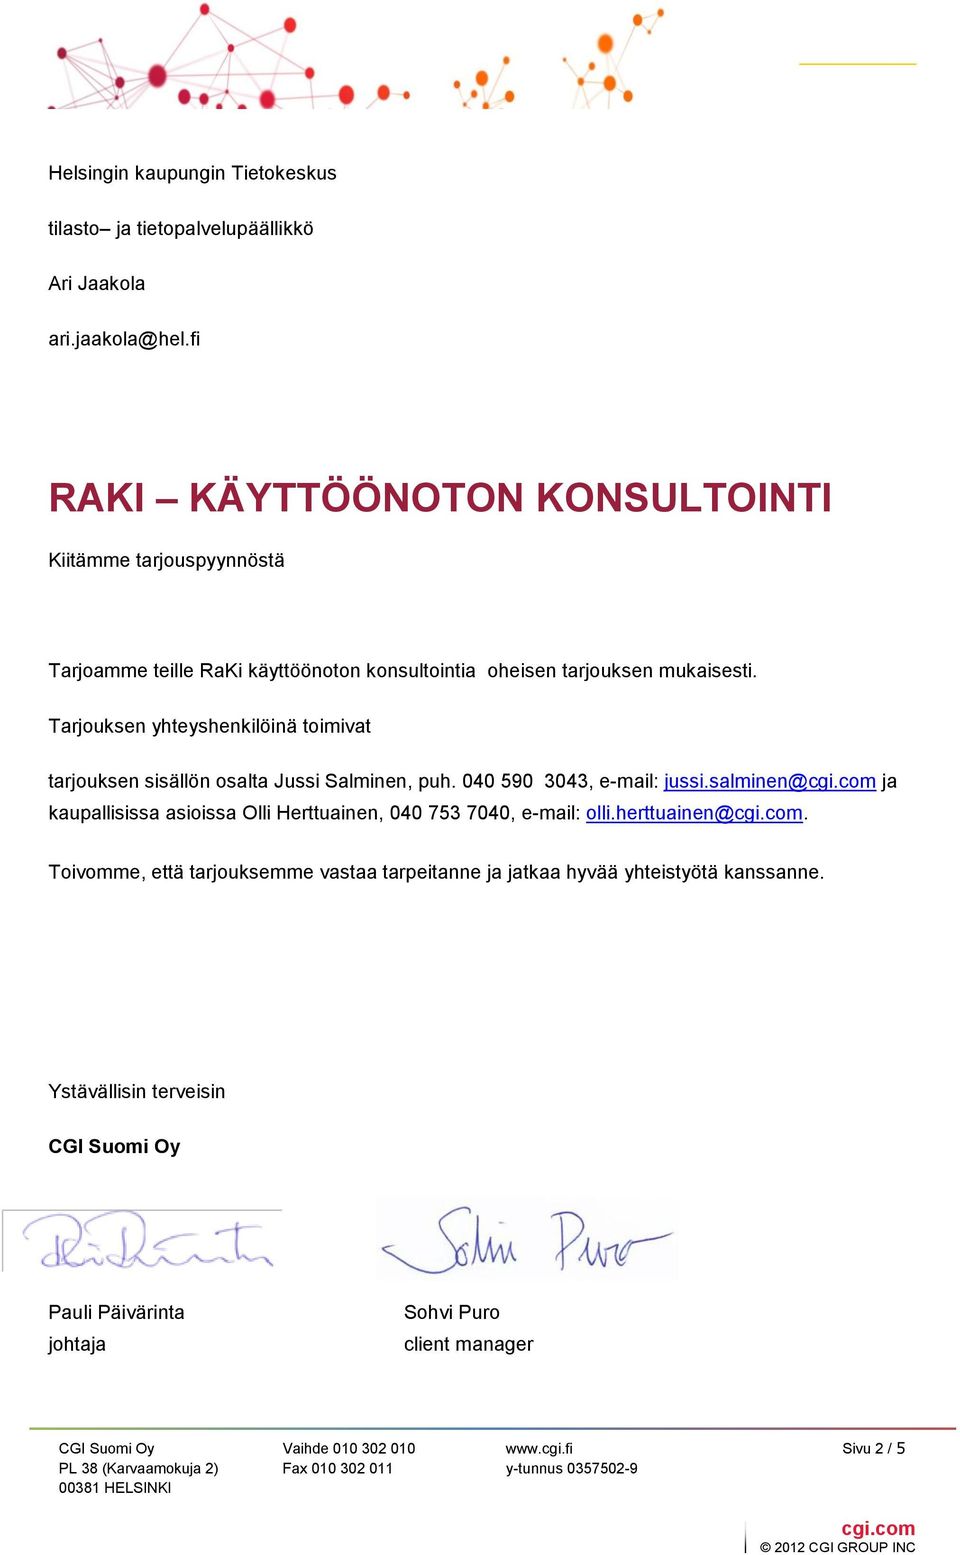 Tarjouksen yhteyshenkilöinä toimivat tarjouksen sisällön osalta Jussi Salminen, puh. 040 590 3043, e-mail: jussi.